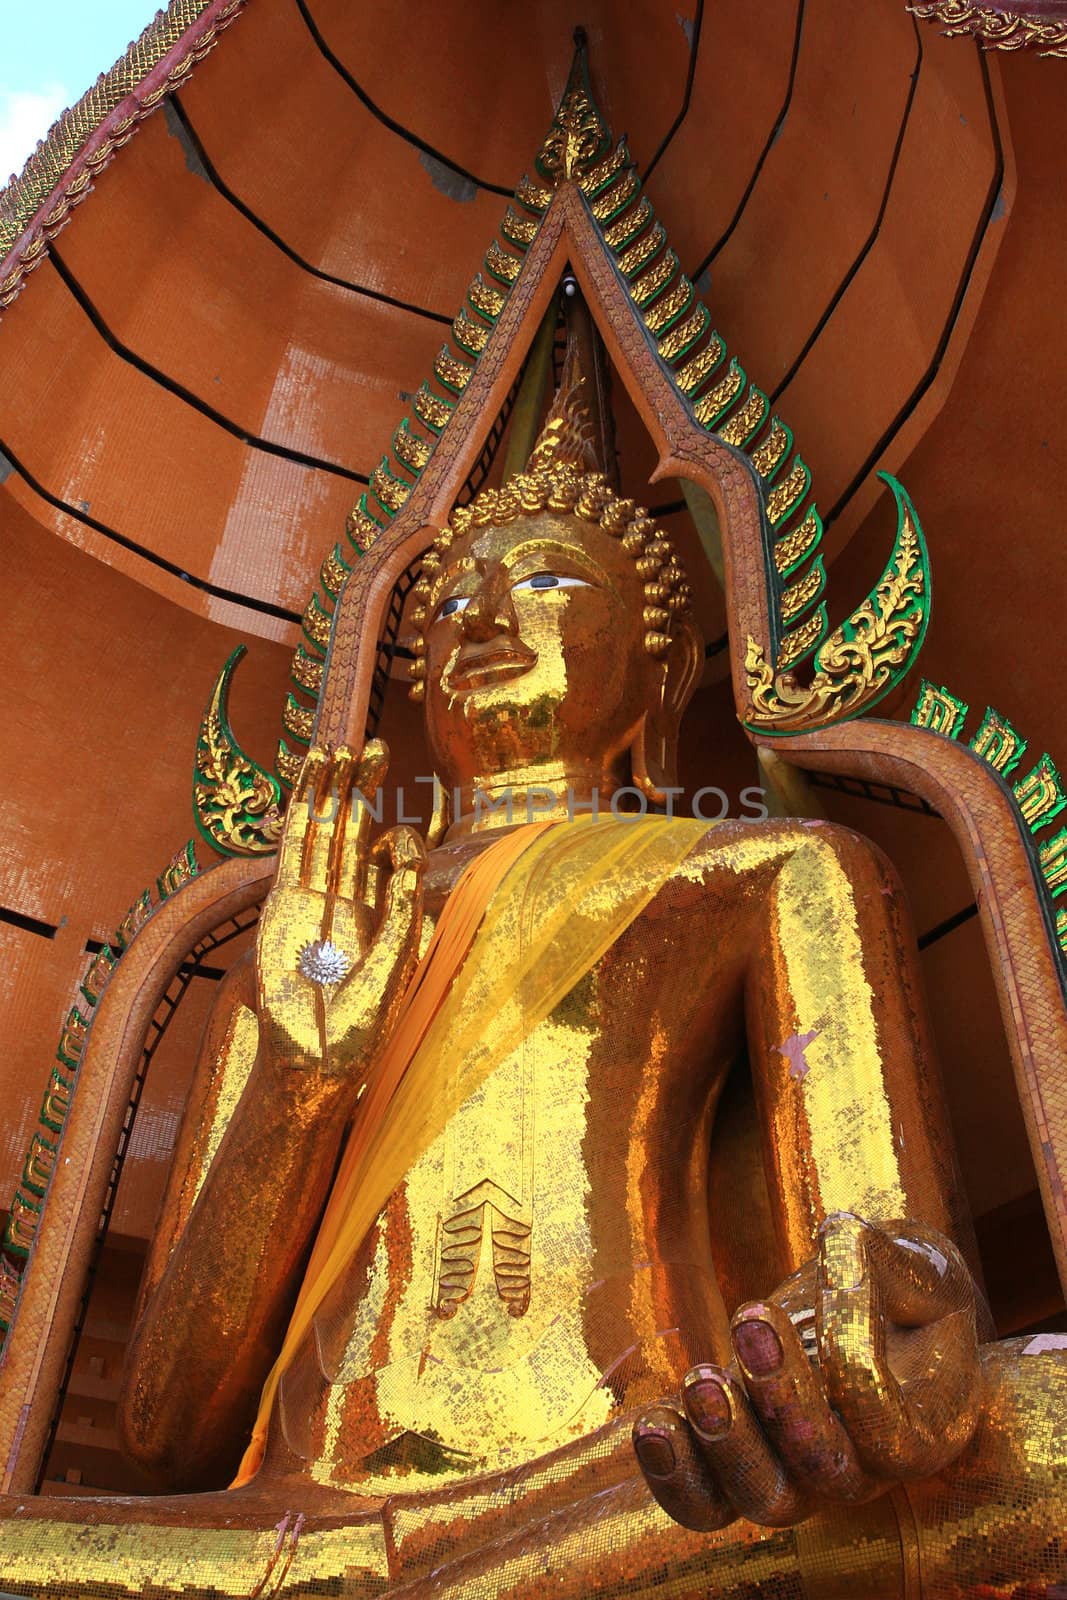 A Sitting Buddha Statue